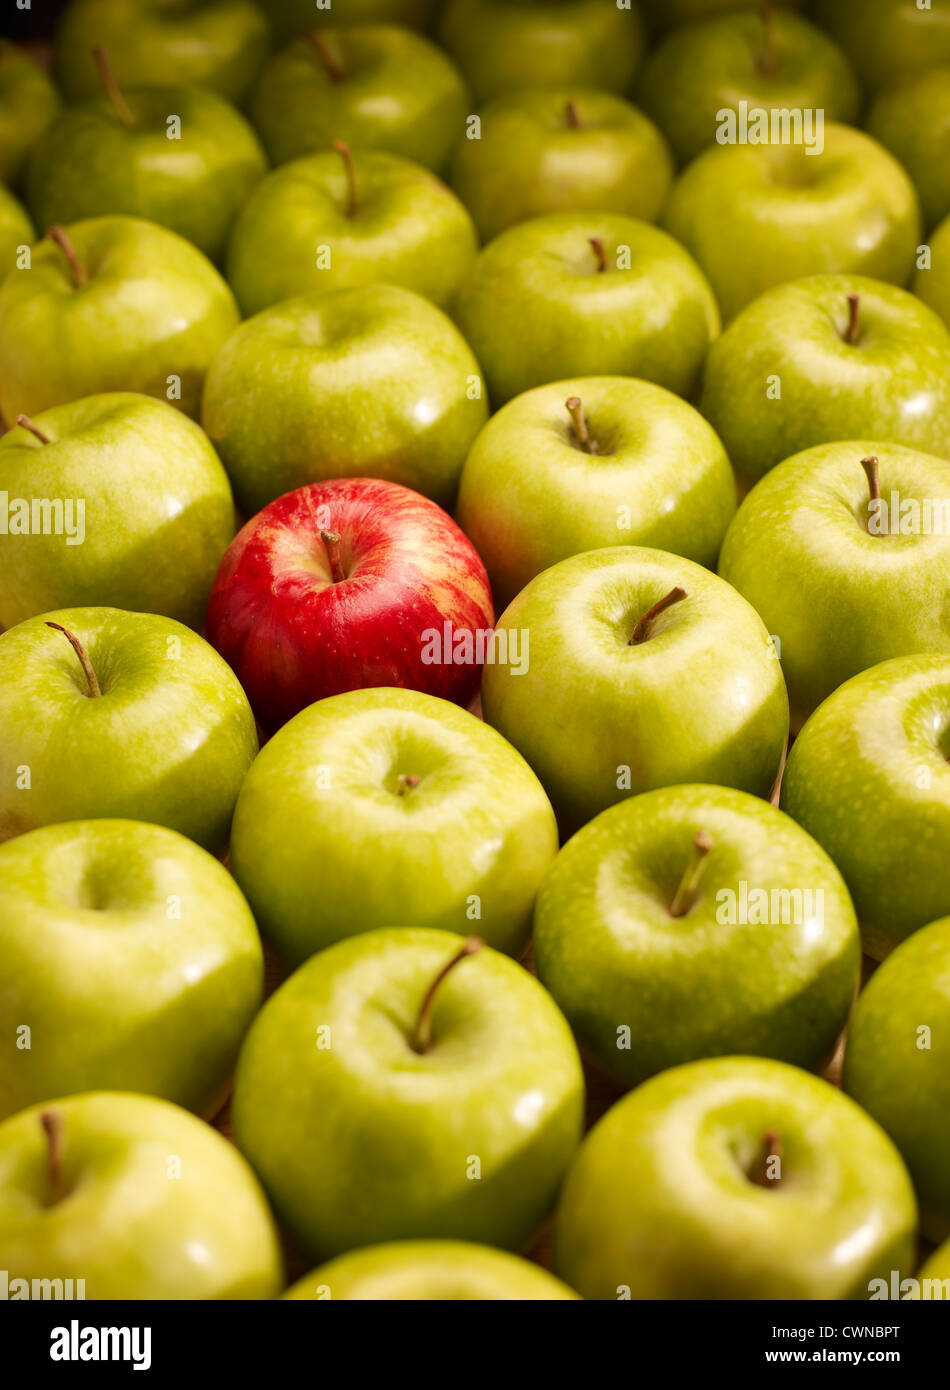 Una manzana roja entre muchas manzanas verdes Foto de stock